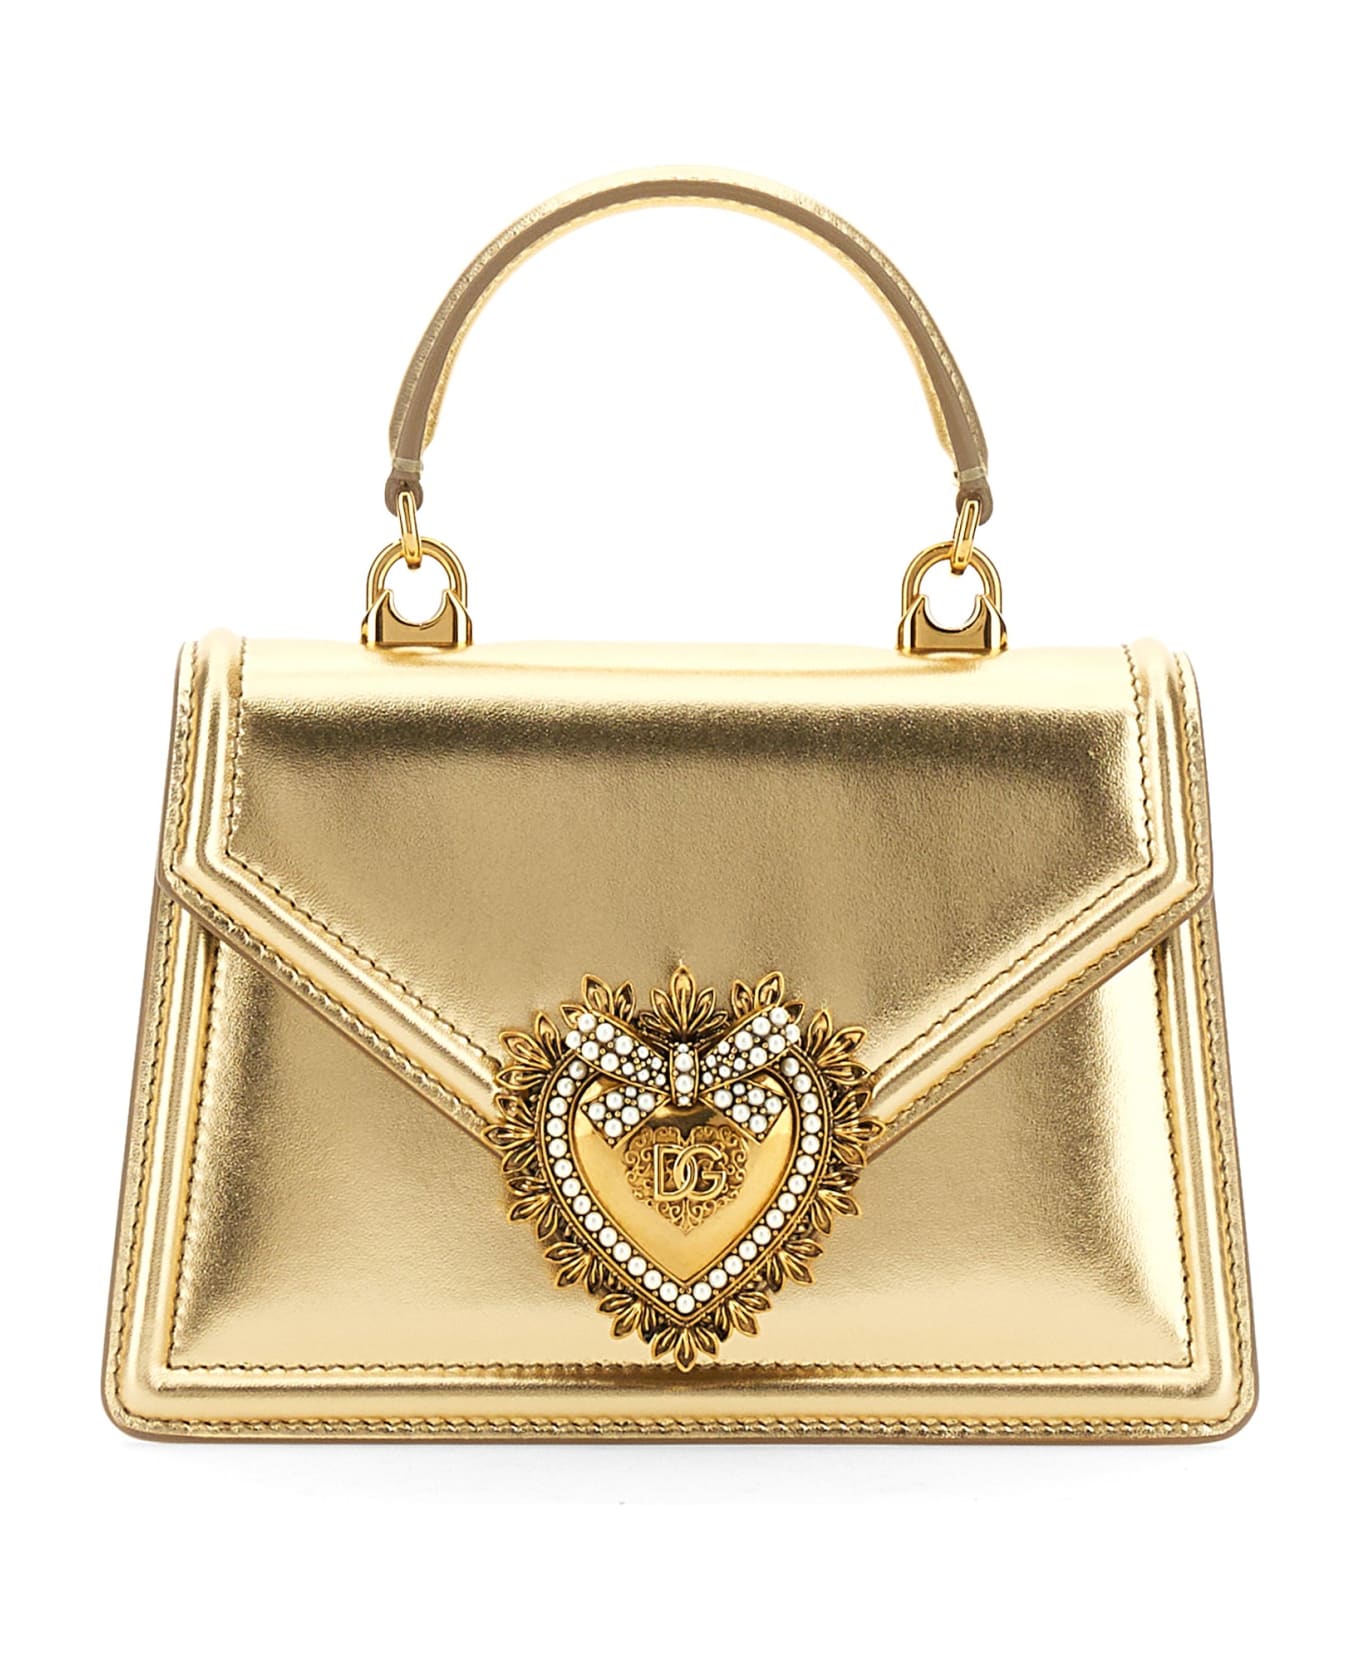 Dolce & Gabbana Devotion Handbag - Gold